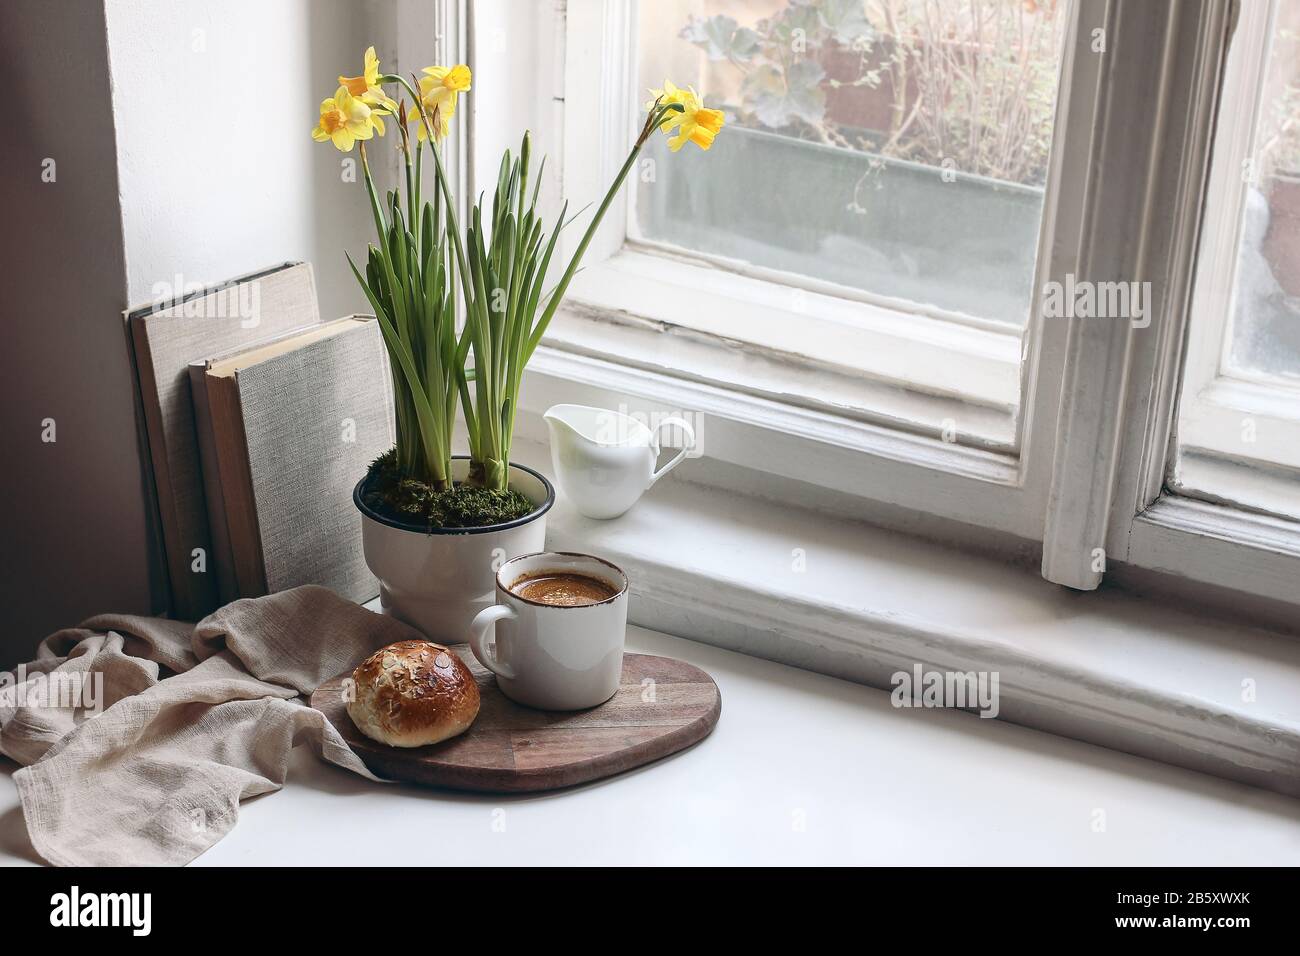 Gemütliches Stilllebensszenerie im Osterfrühling. Tasse Kaffee, süßer Brötchen, Bücher, Holzschneidebrett, Milchkrug und Blumenvase auf altem Fensterbrett. Blumen Stockfoto